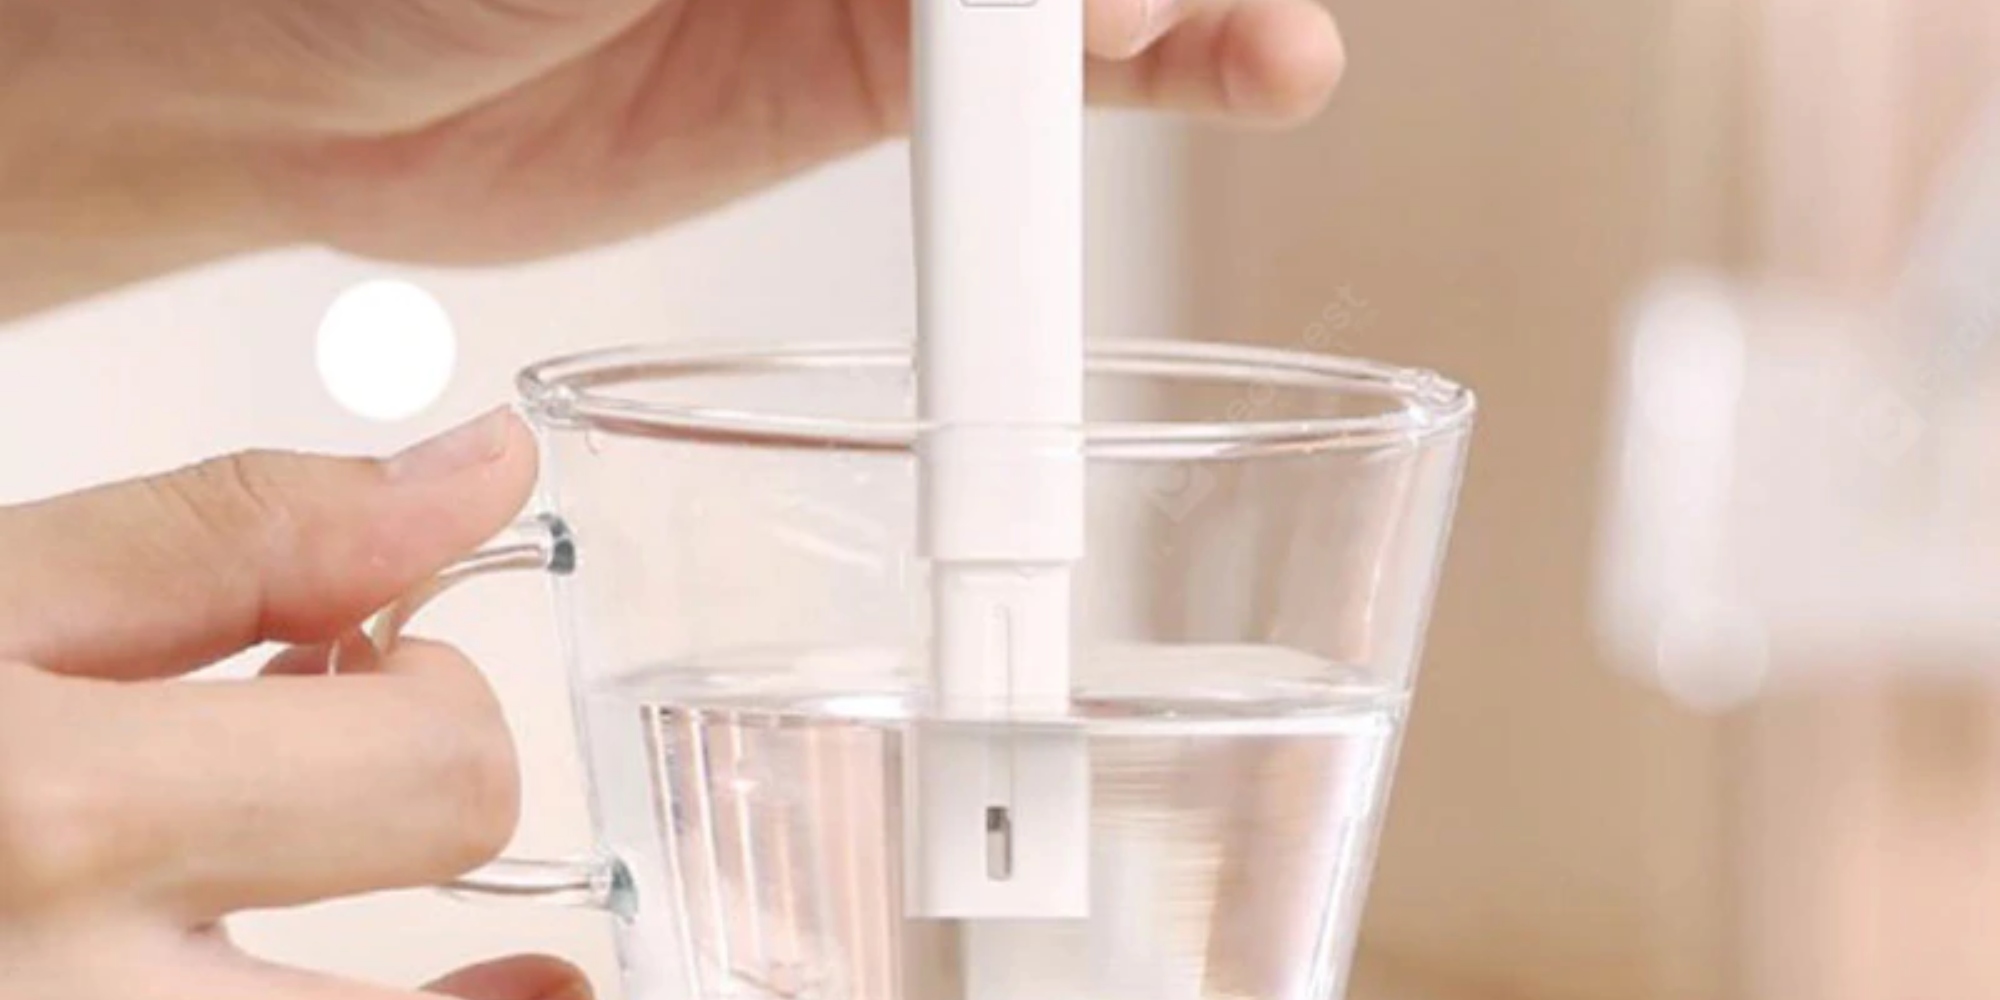 جهاز فحص الماء ونسبة المعادن TDS من شاومي – اقتنيه للحفاظ على صحة عائلتك